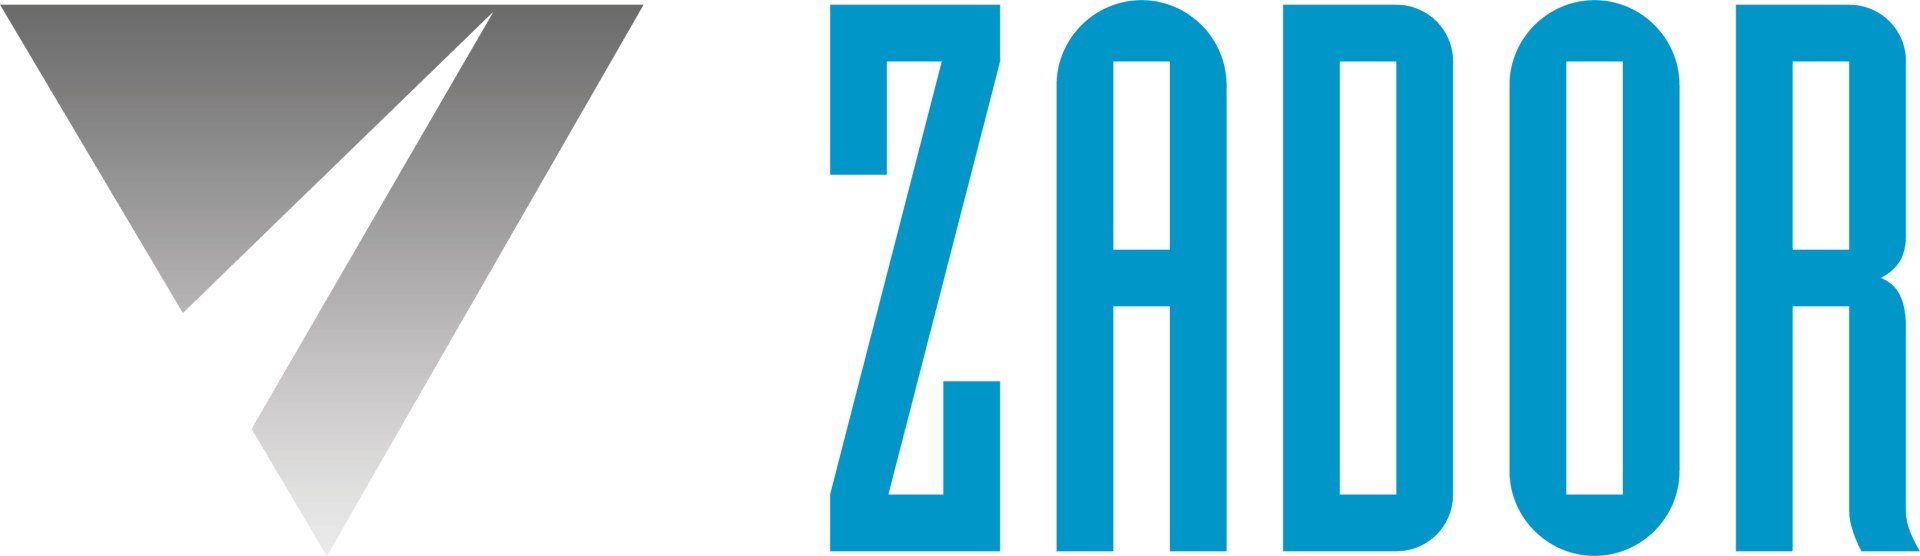 Zador logo